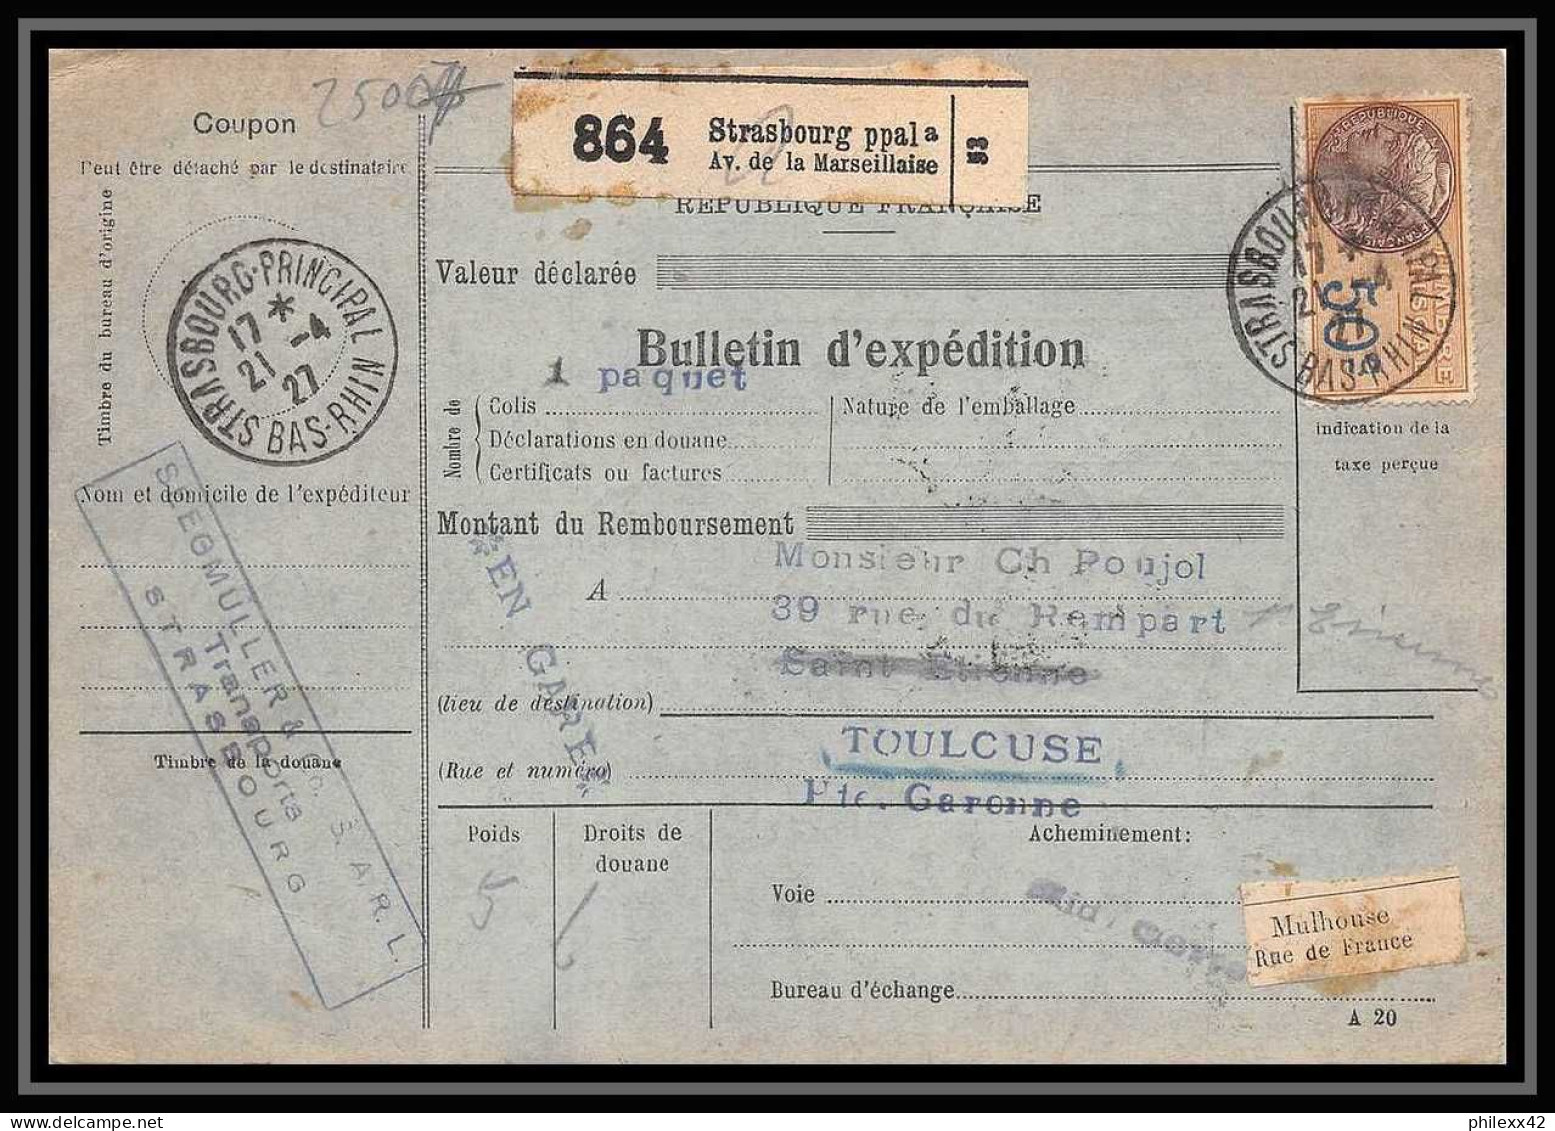 25007 Bulletin D'expédition France Colis Postaux Fiscal Haut Rhin 1927 Strasbourg Semeuse Merson 145 EN GARE - Lettres & Documents